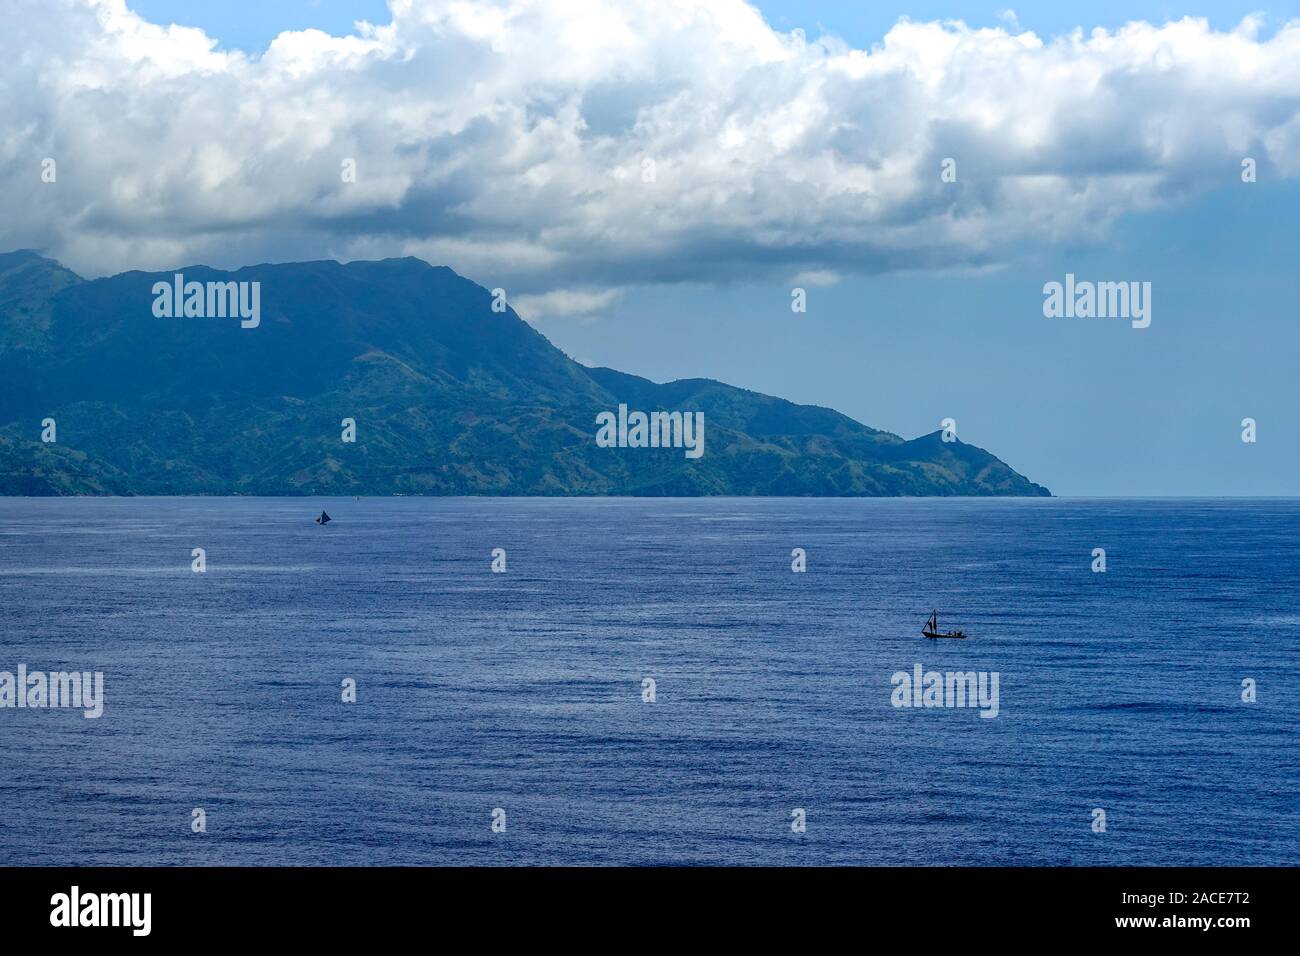 Haïti-11/1/19 : Le ciel voilé et montagneuse des côtes de l'île des Caraïbes d'Haïti en tant qu'un navire de croisière voiles par. Banque D'Images